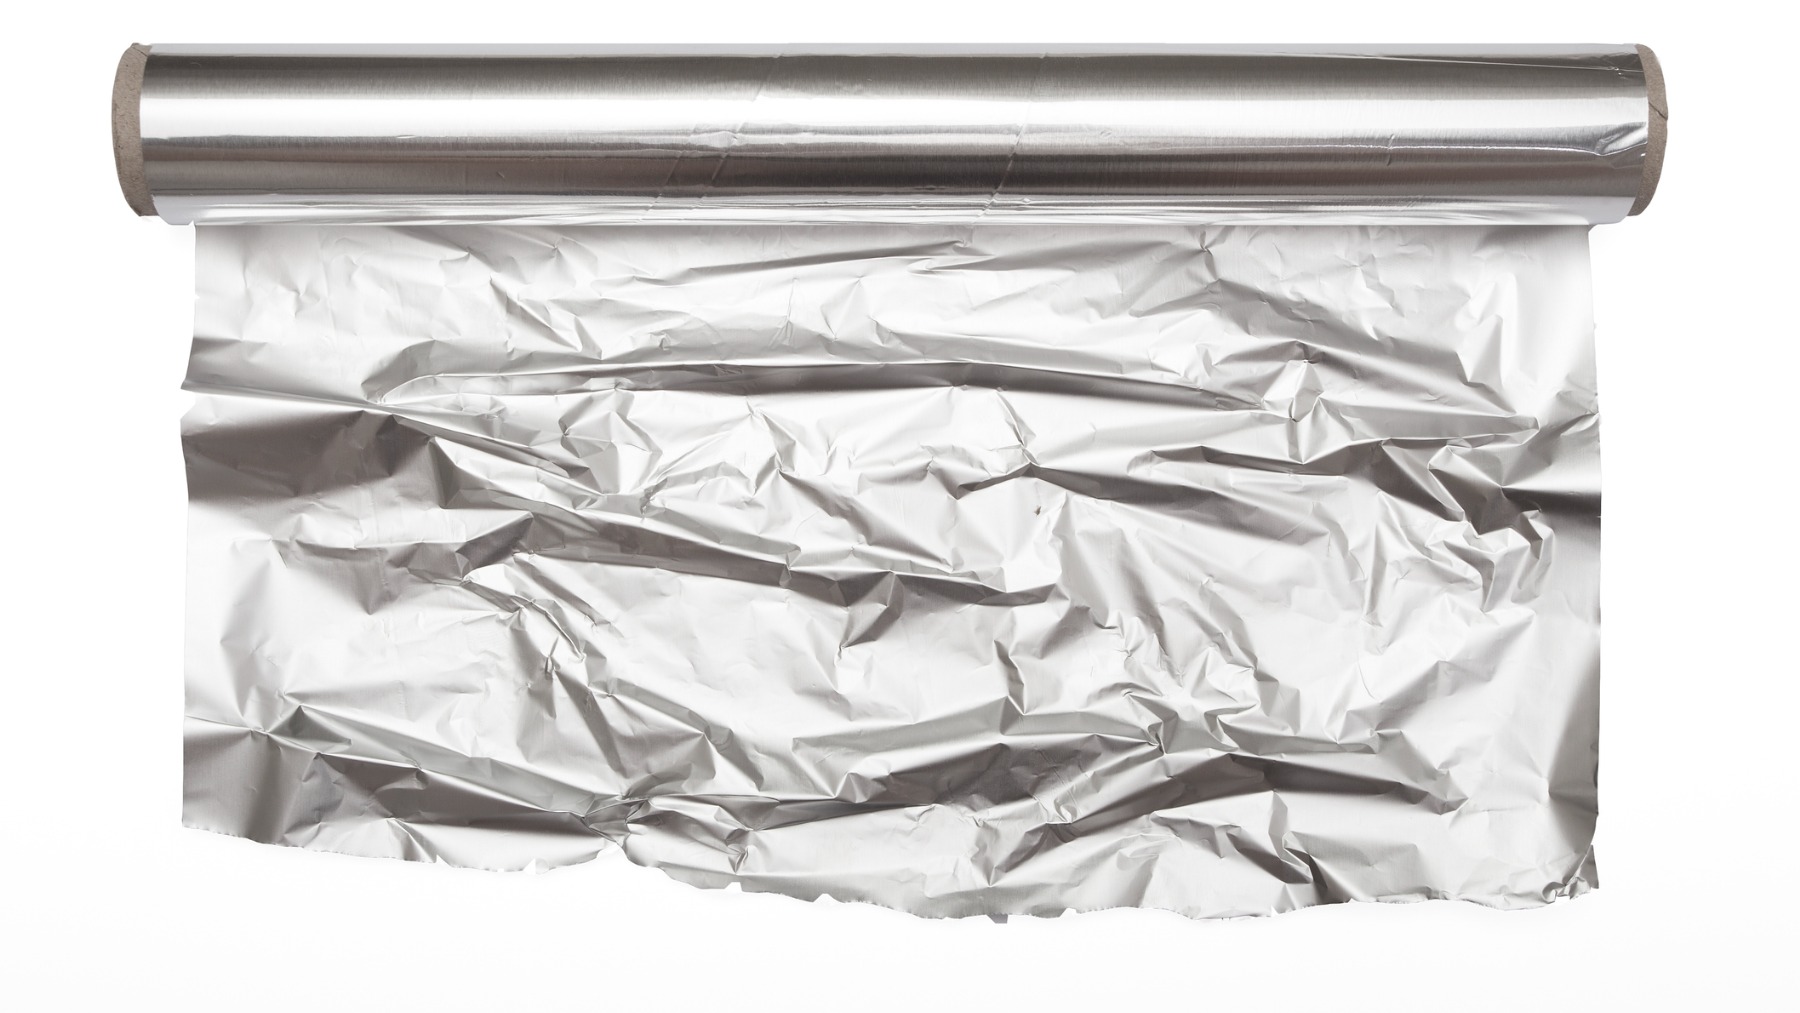 Envolver comida en papel aluminio es un gran error